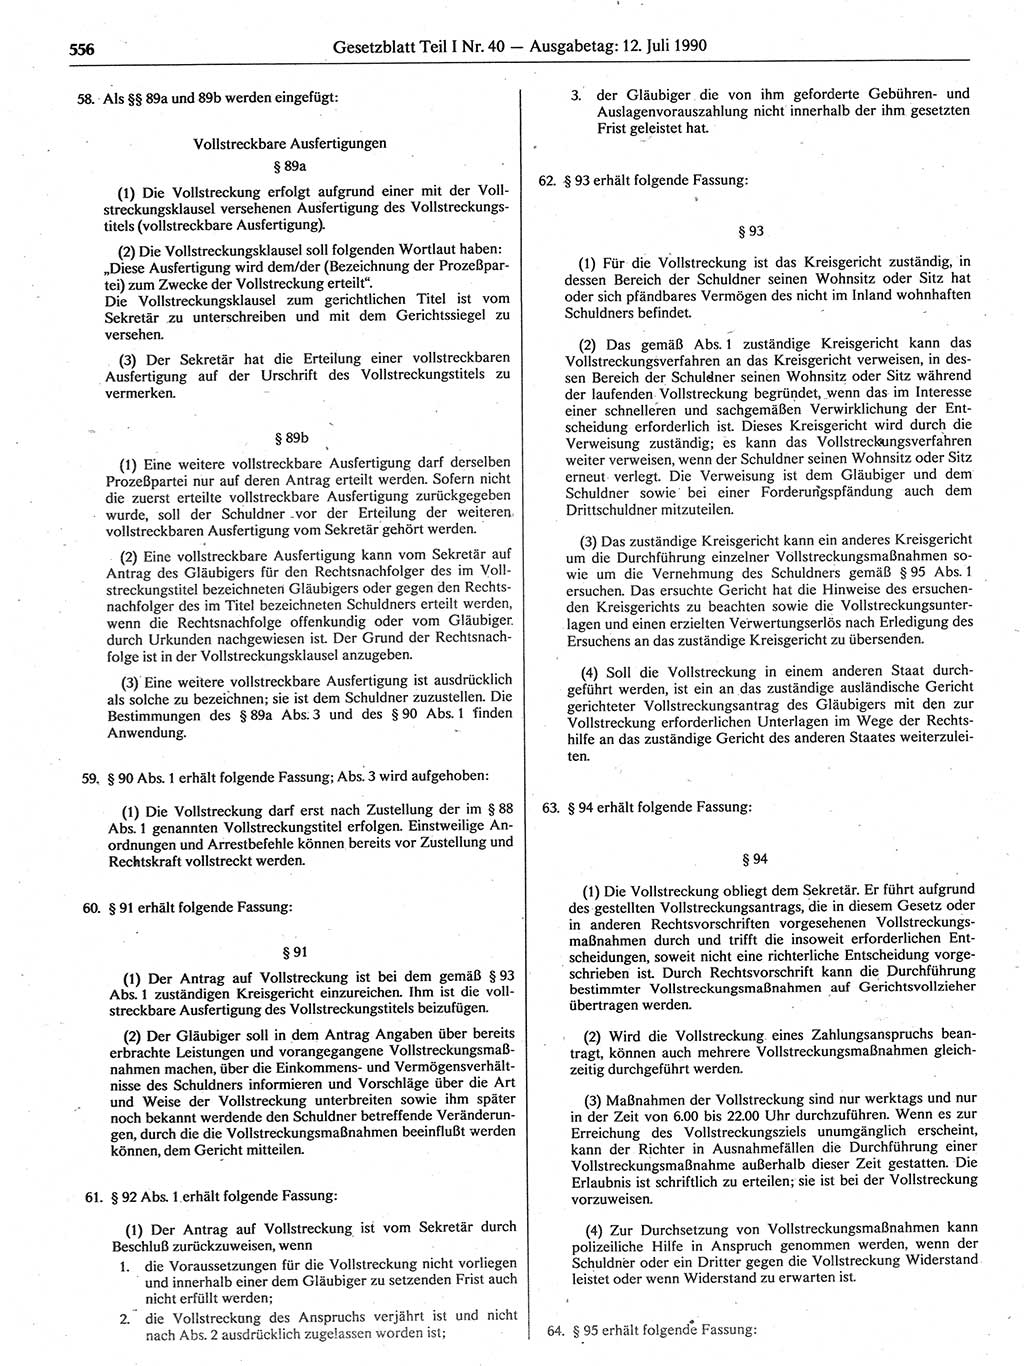 Gesetzblatt (GBl.) der Deutschen Demokratischen Republik (DDR) Teil Ⅰ 1990, Seite 556 (GBl. DDR Ⅰ 1990, S. 556)